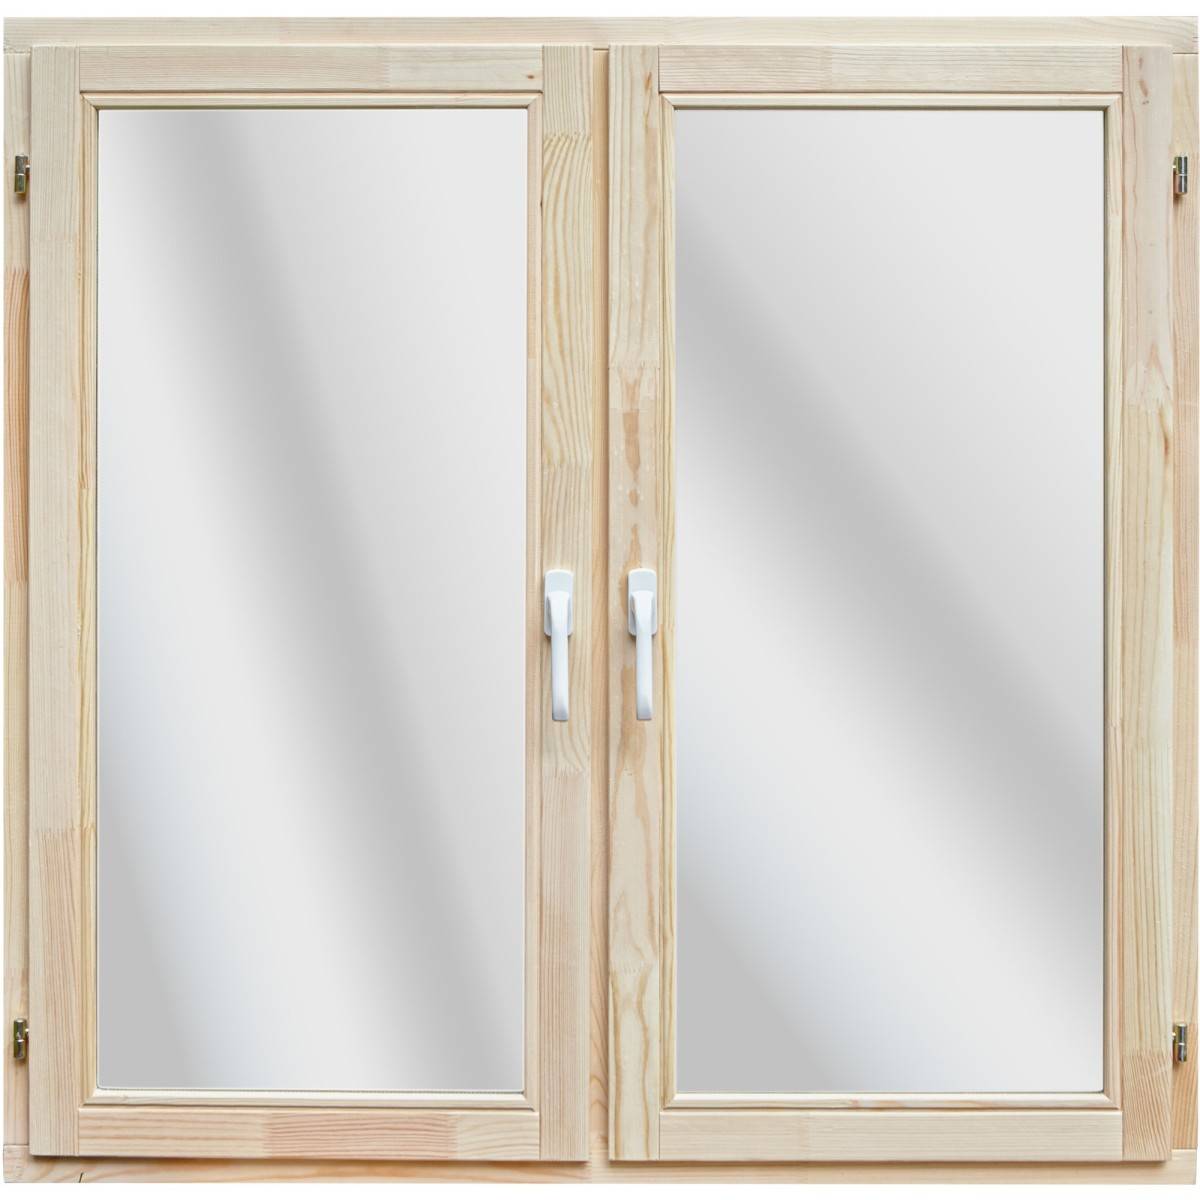 Современные деревянные окна со стеклопакетами: правила выбора